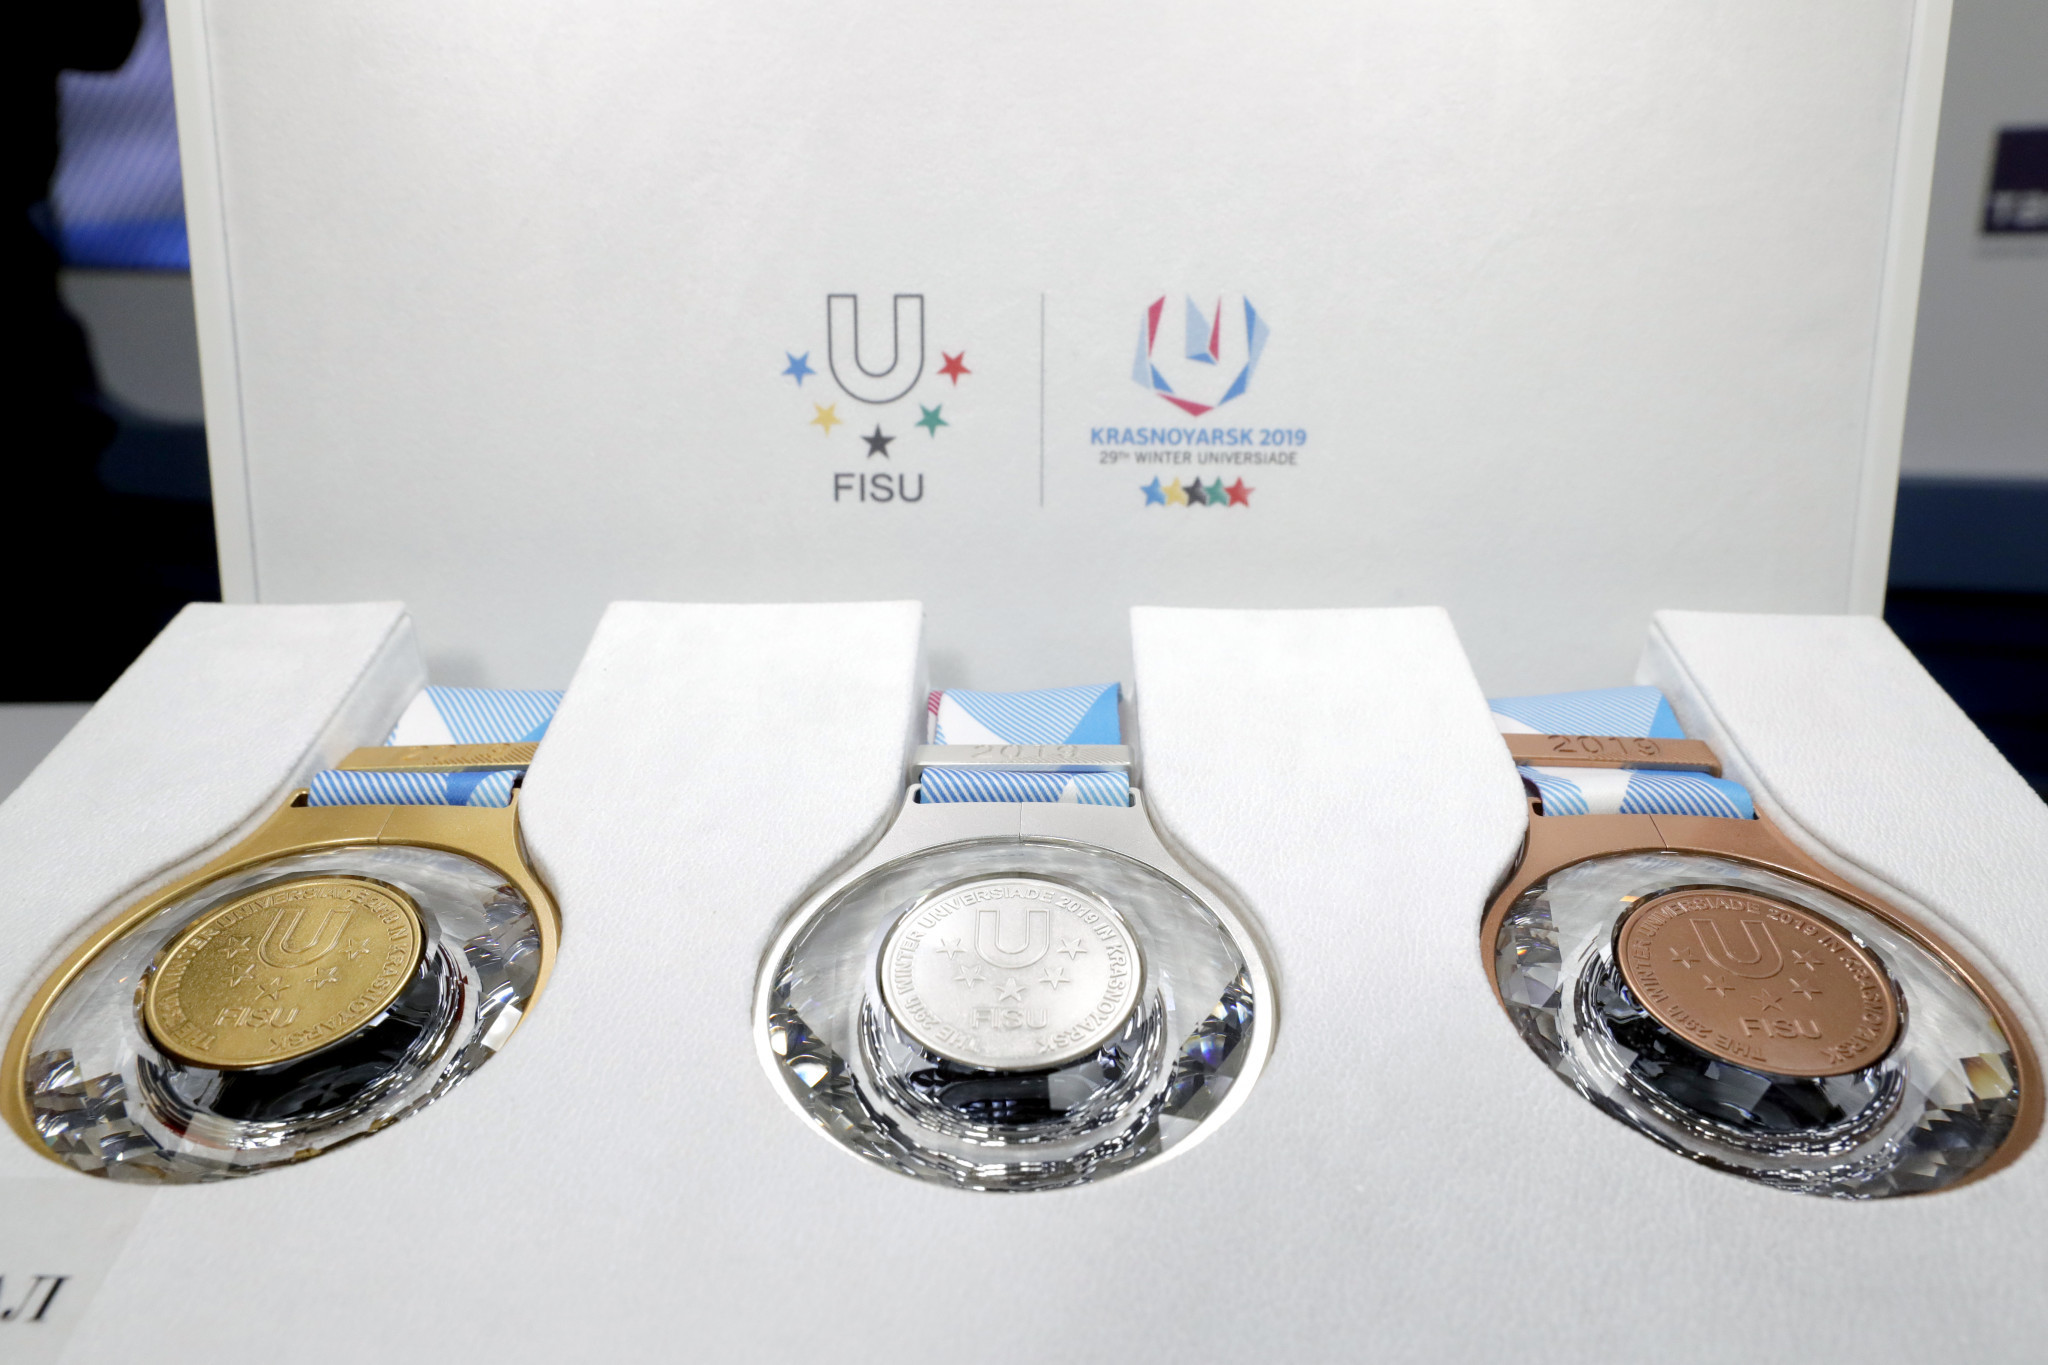 The crystal-filled medals for the Krasnoyarsk 2019 Winter Universiade have been unveiled ©Krasnoyarsk 2019